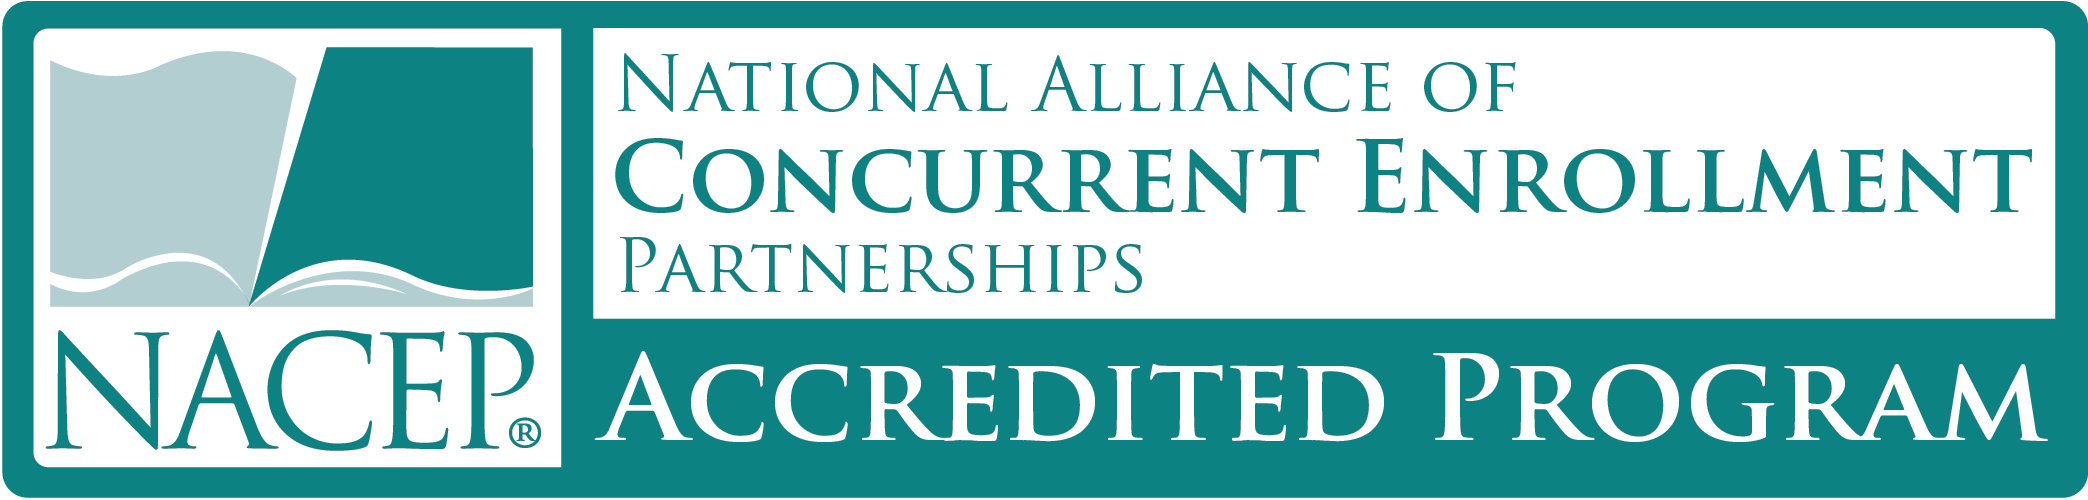 NACEP accredited program logo image